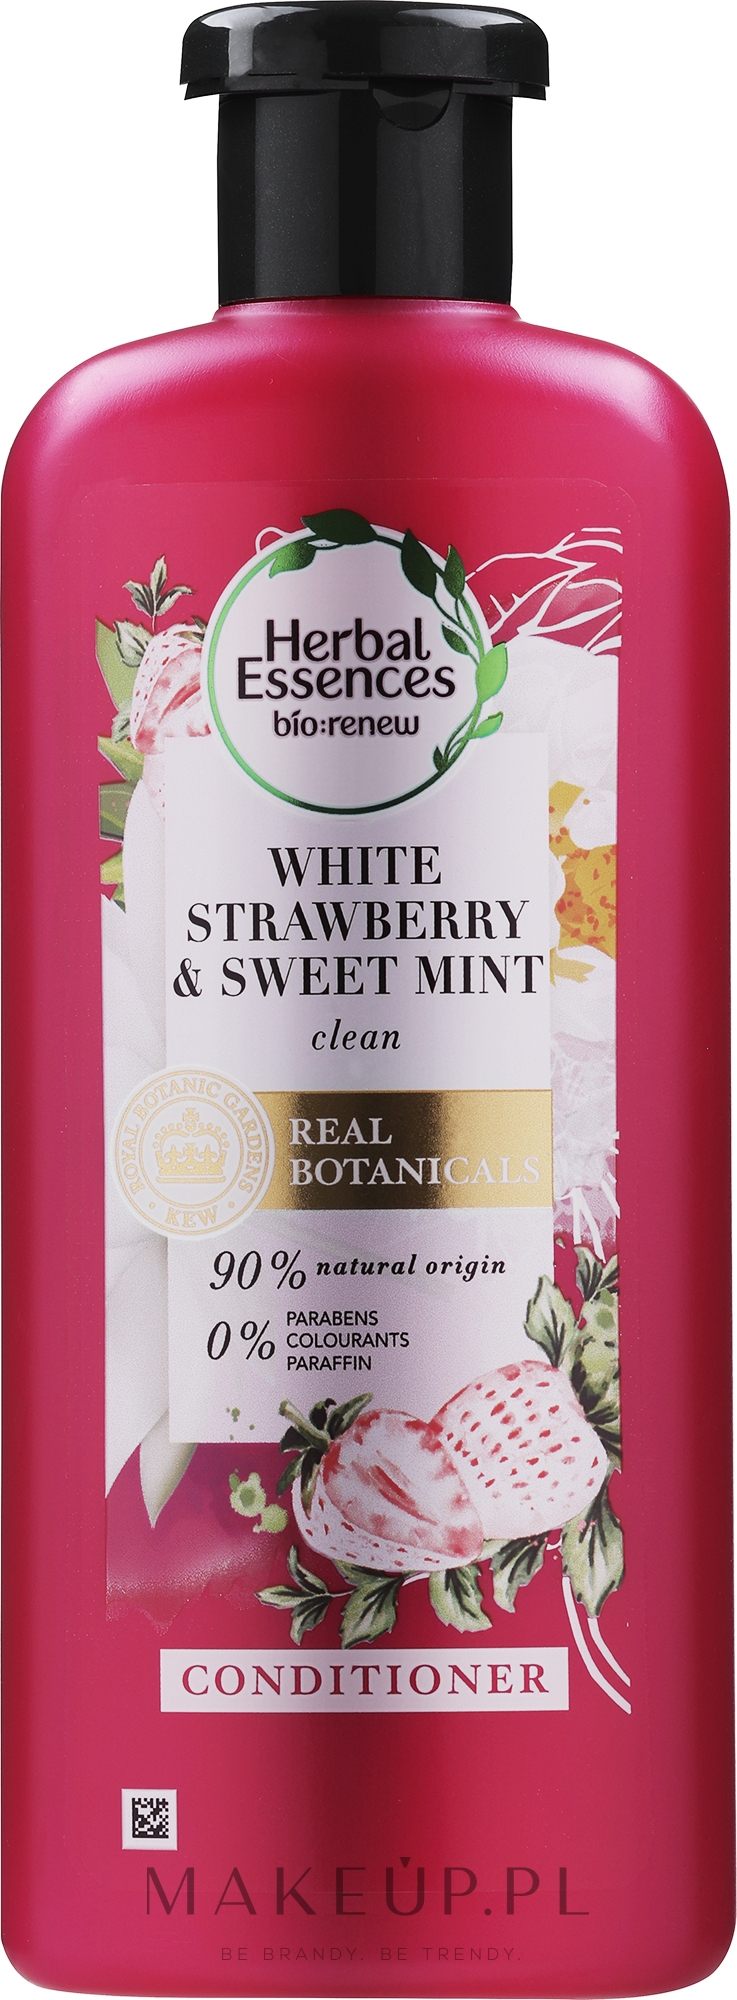 herbal essences szampon do włosów clean white strawberry